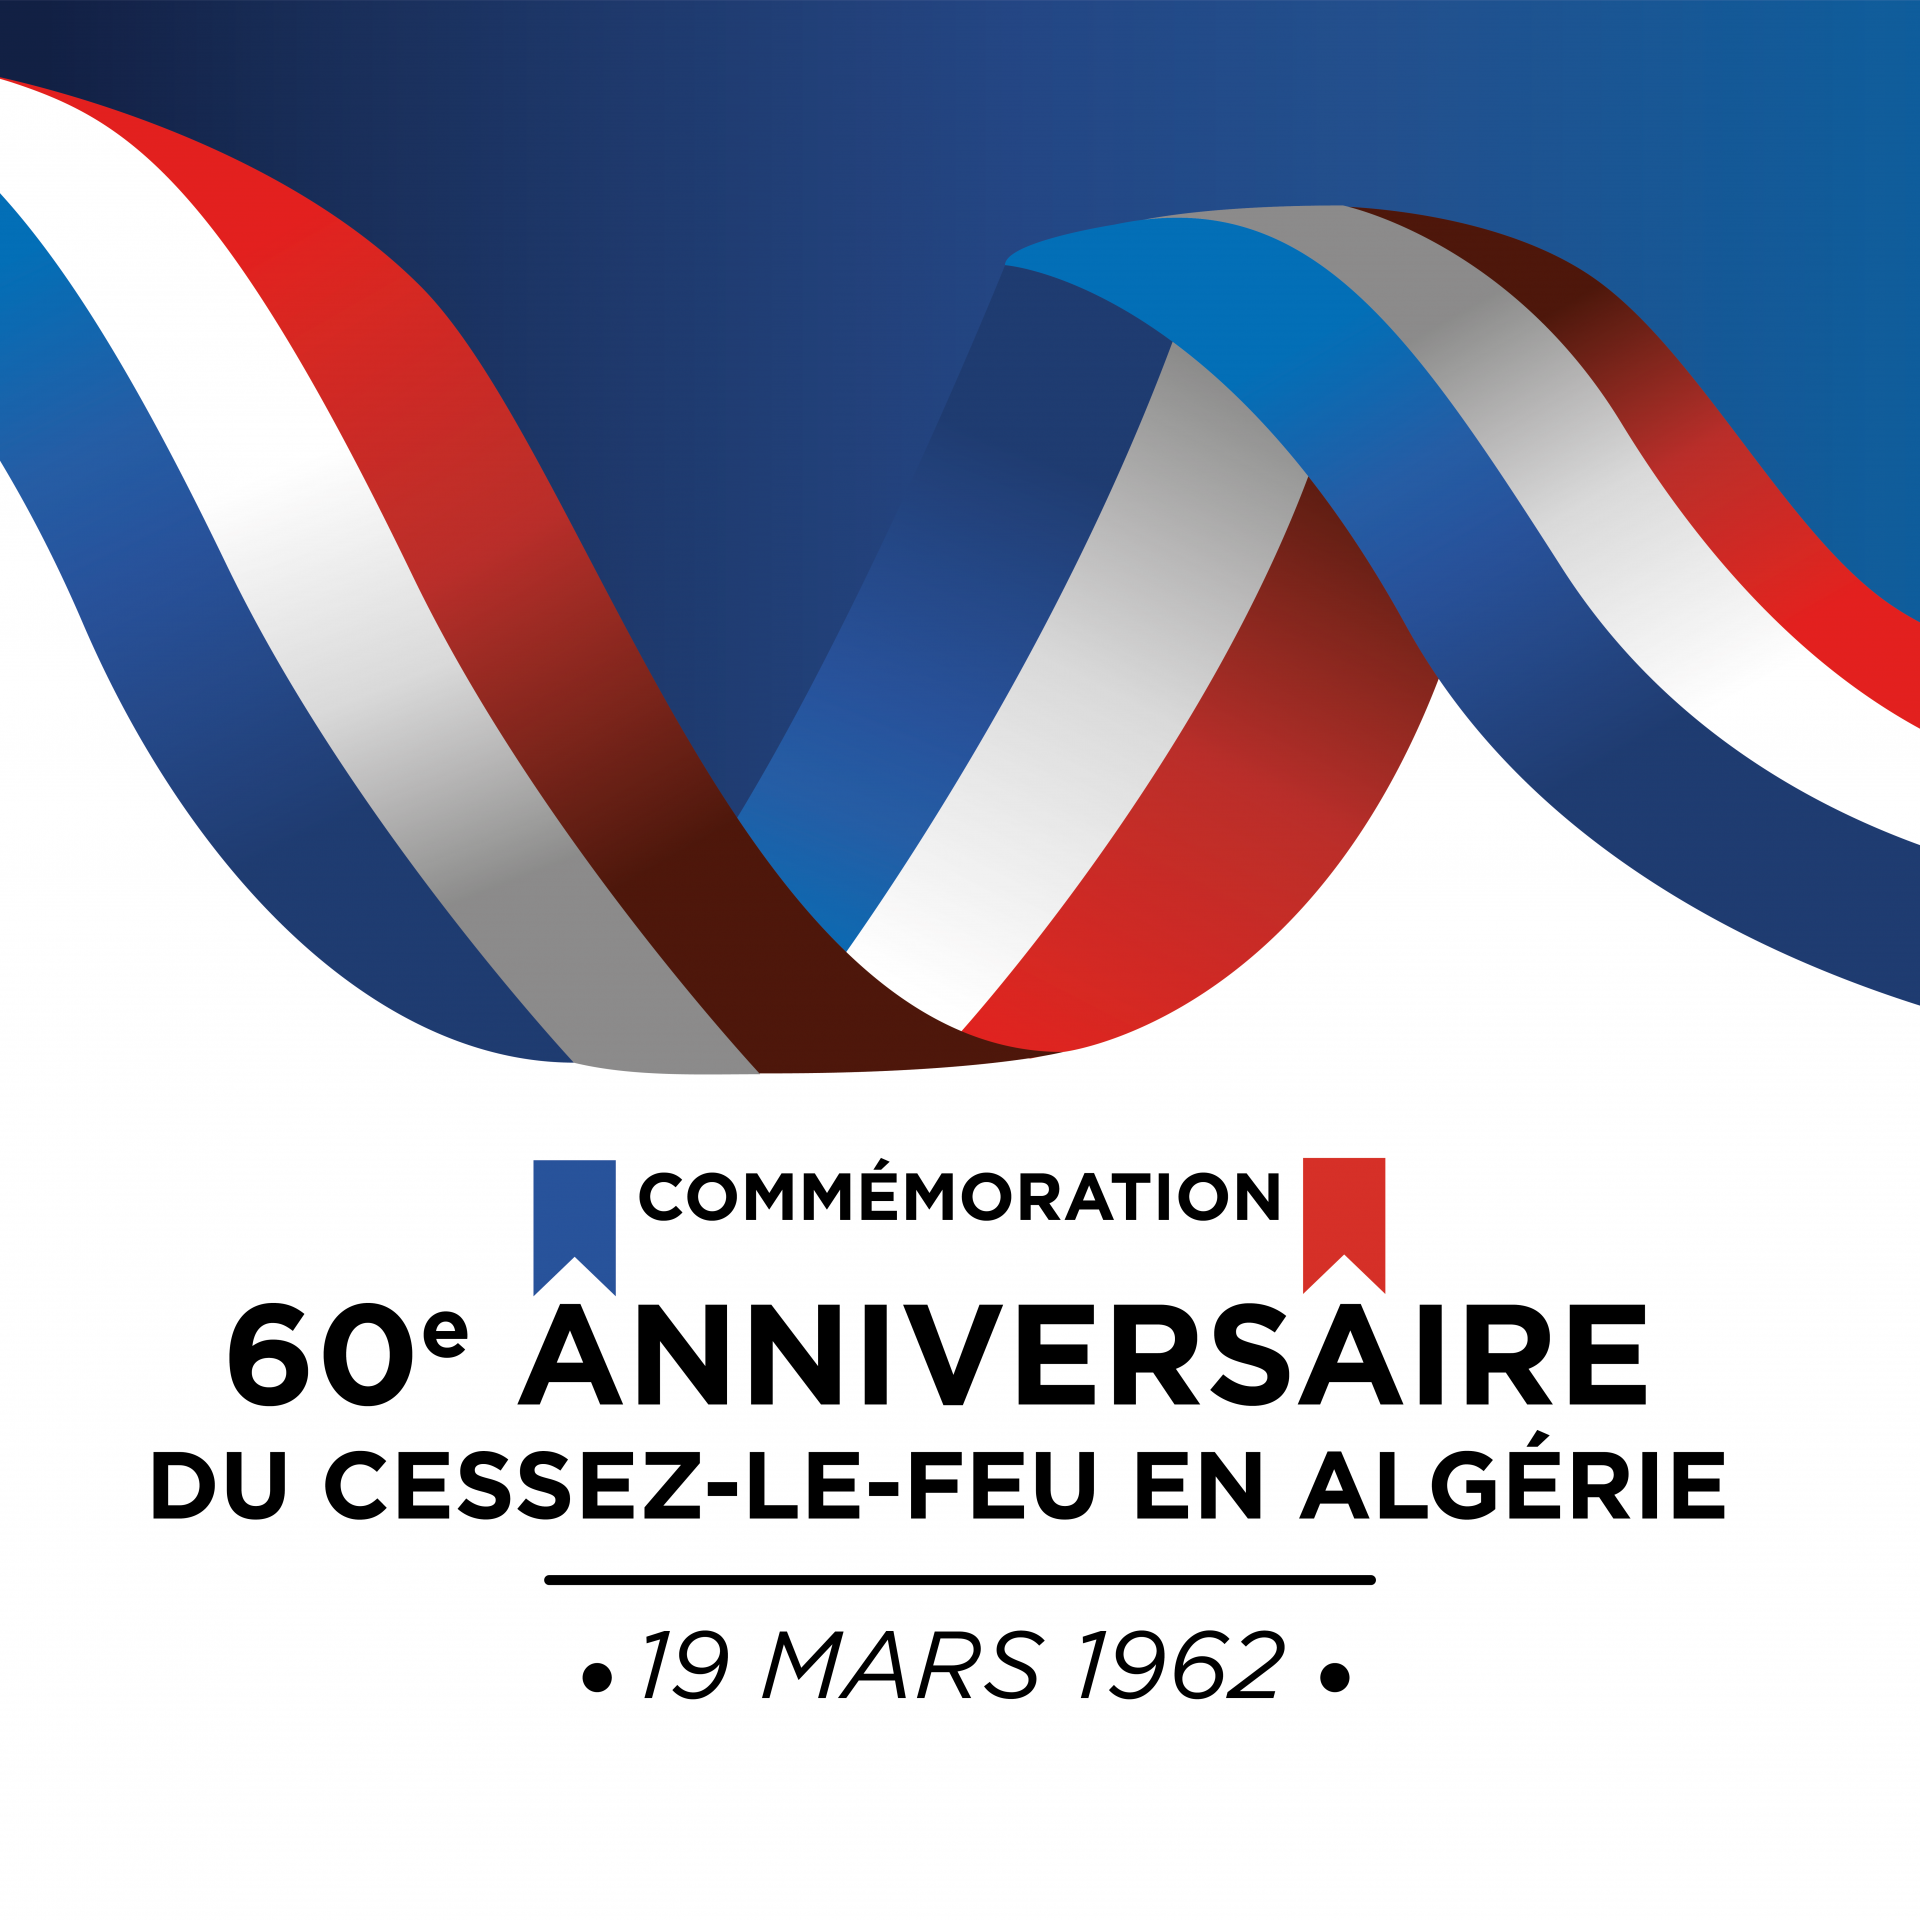 Commémoration du 60e anniversaire du cessez-le-feu en Algérie le 19 mars